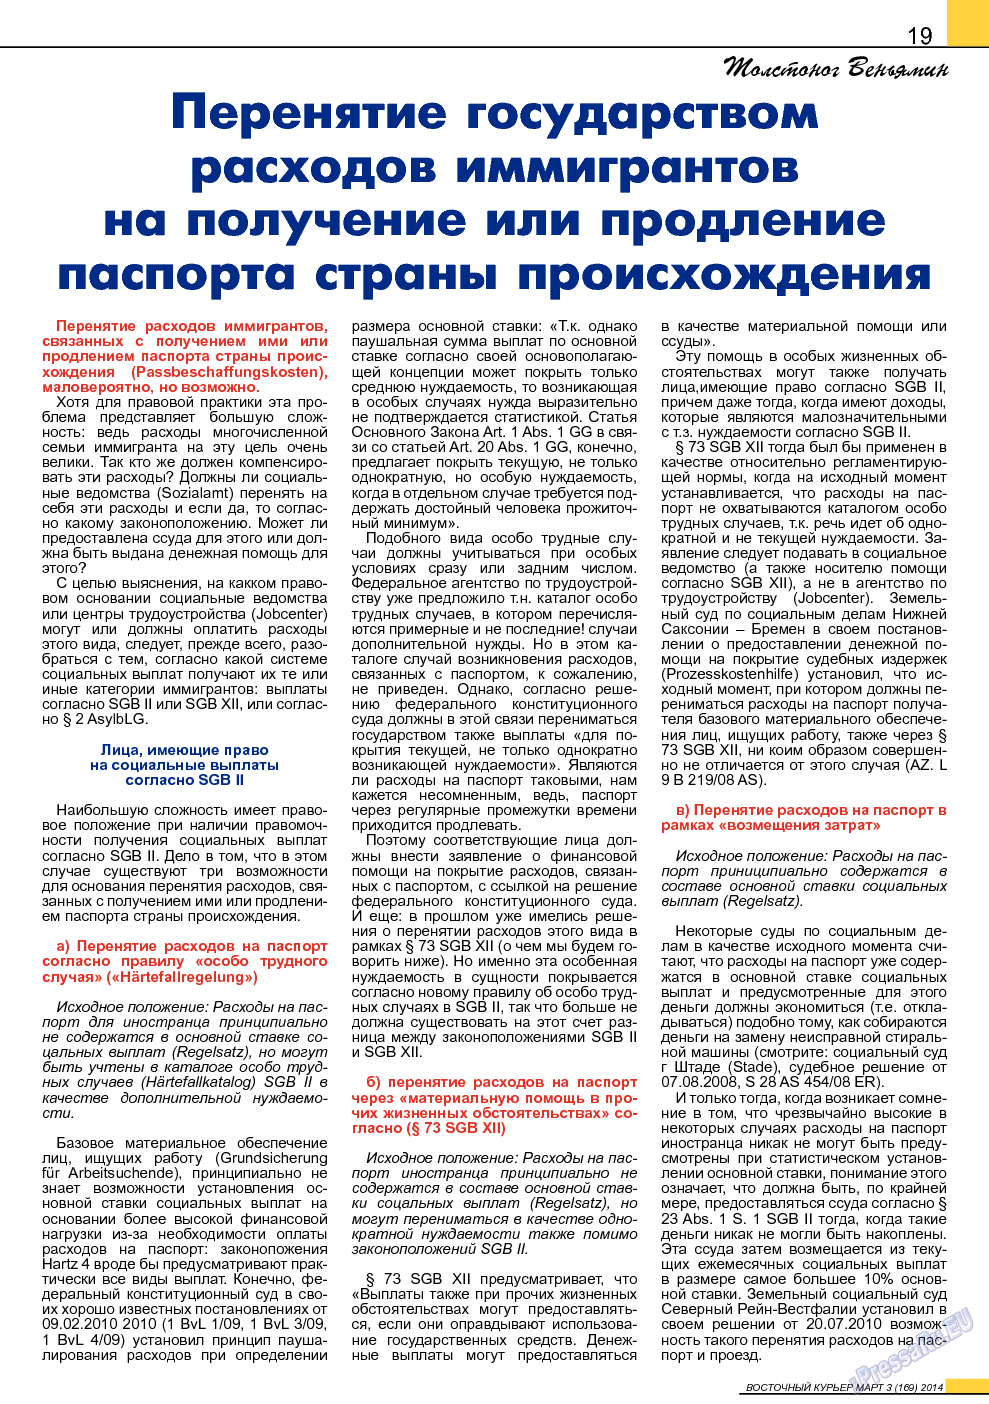 Восточный курьер, журнал. 2014 №3 стр.19